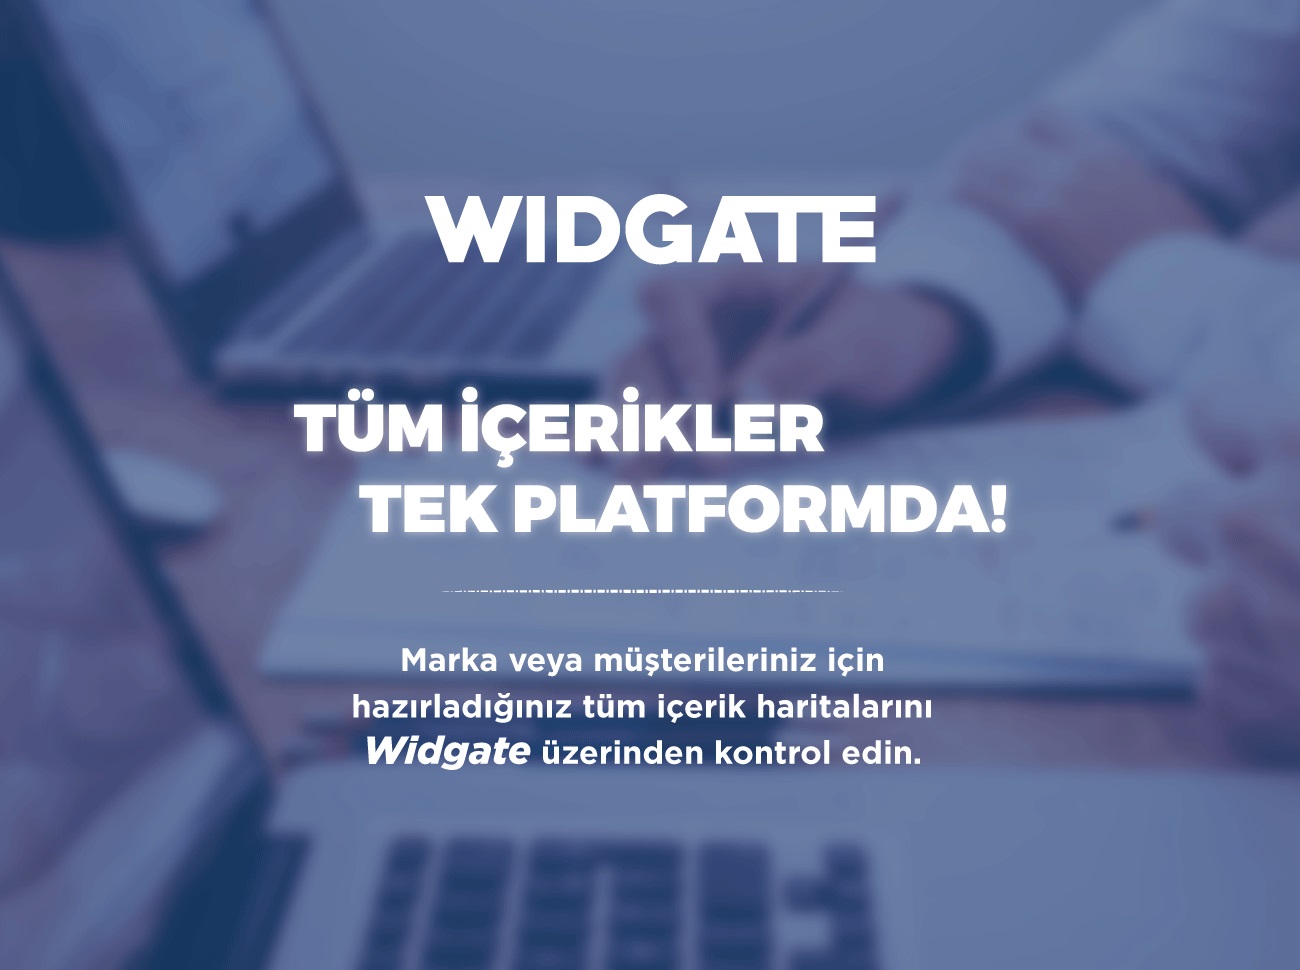 Widgate İçerik Yönetimini Kolaylaştırıyor